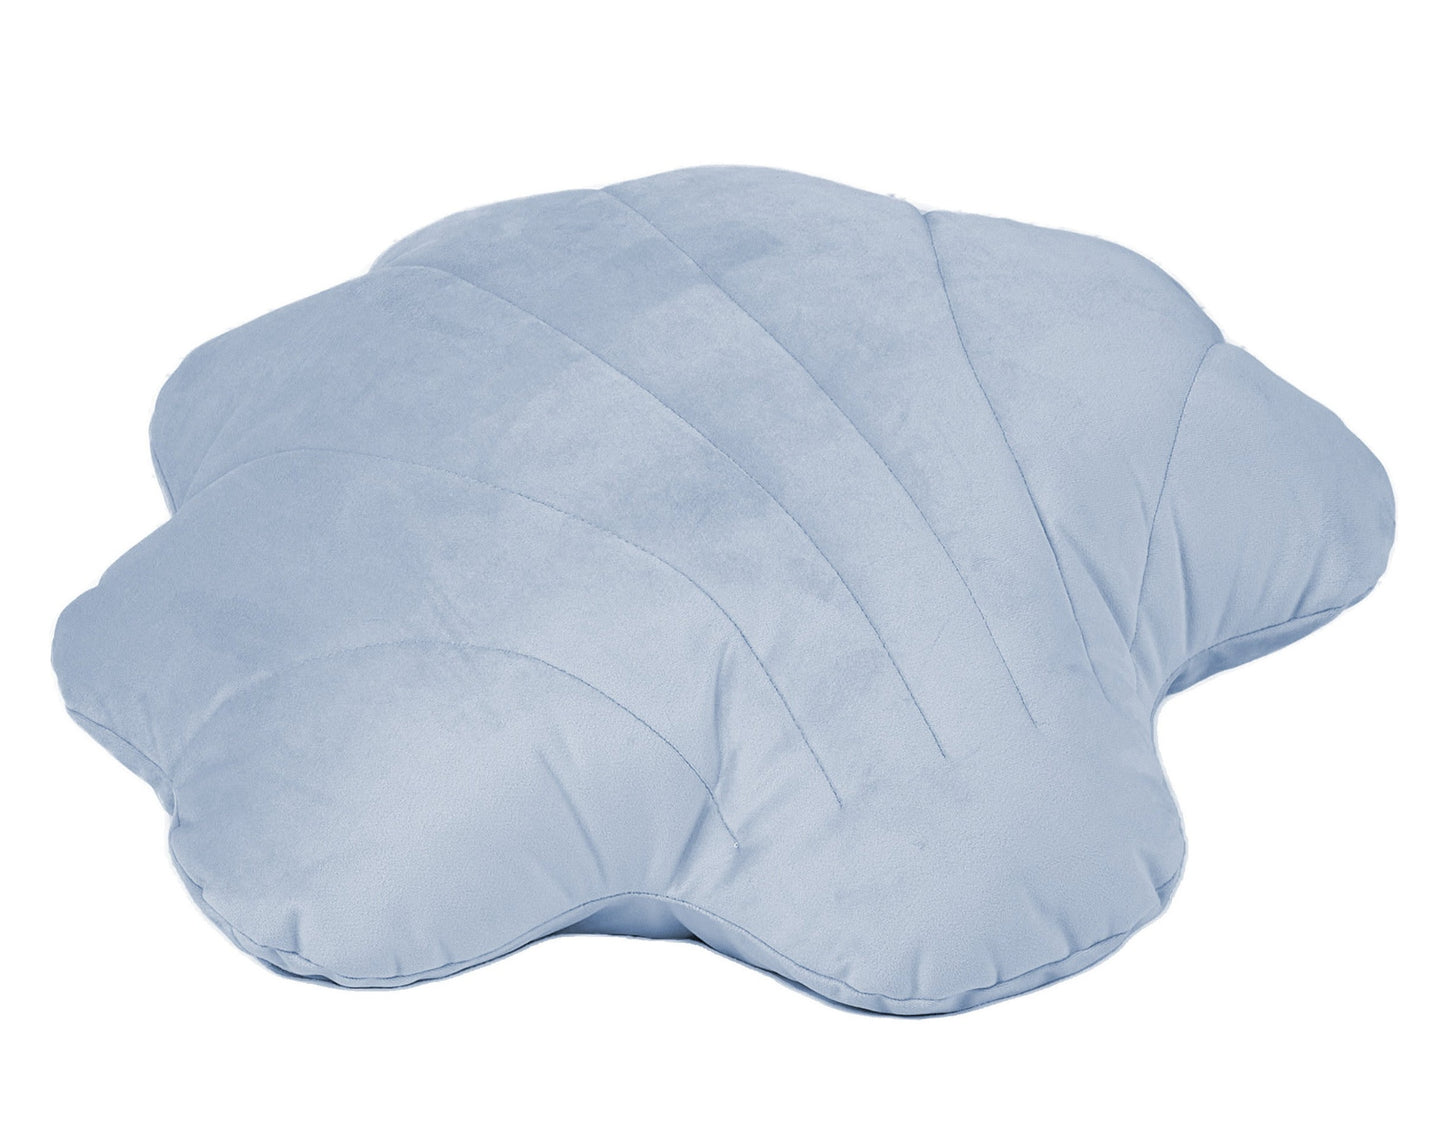 Mermaid - Cushion - 30x35 cm - Blue